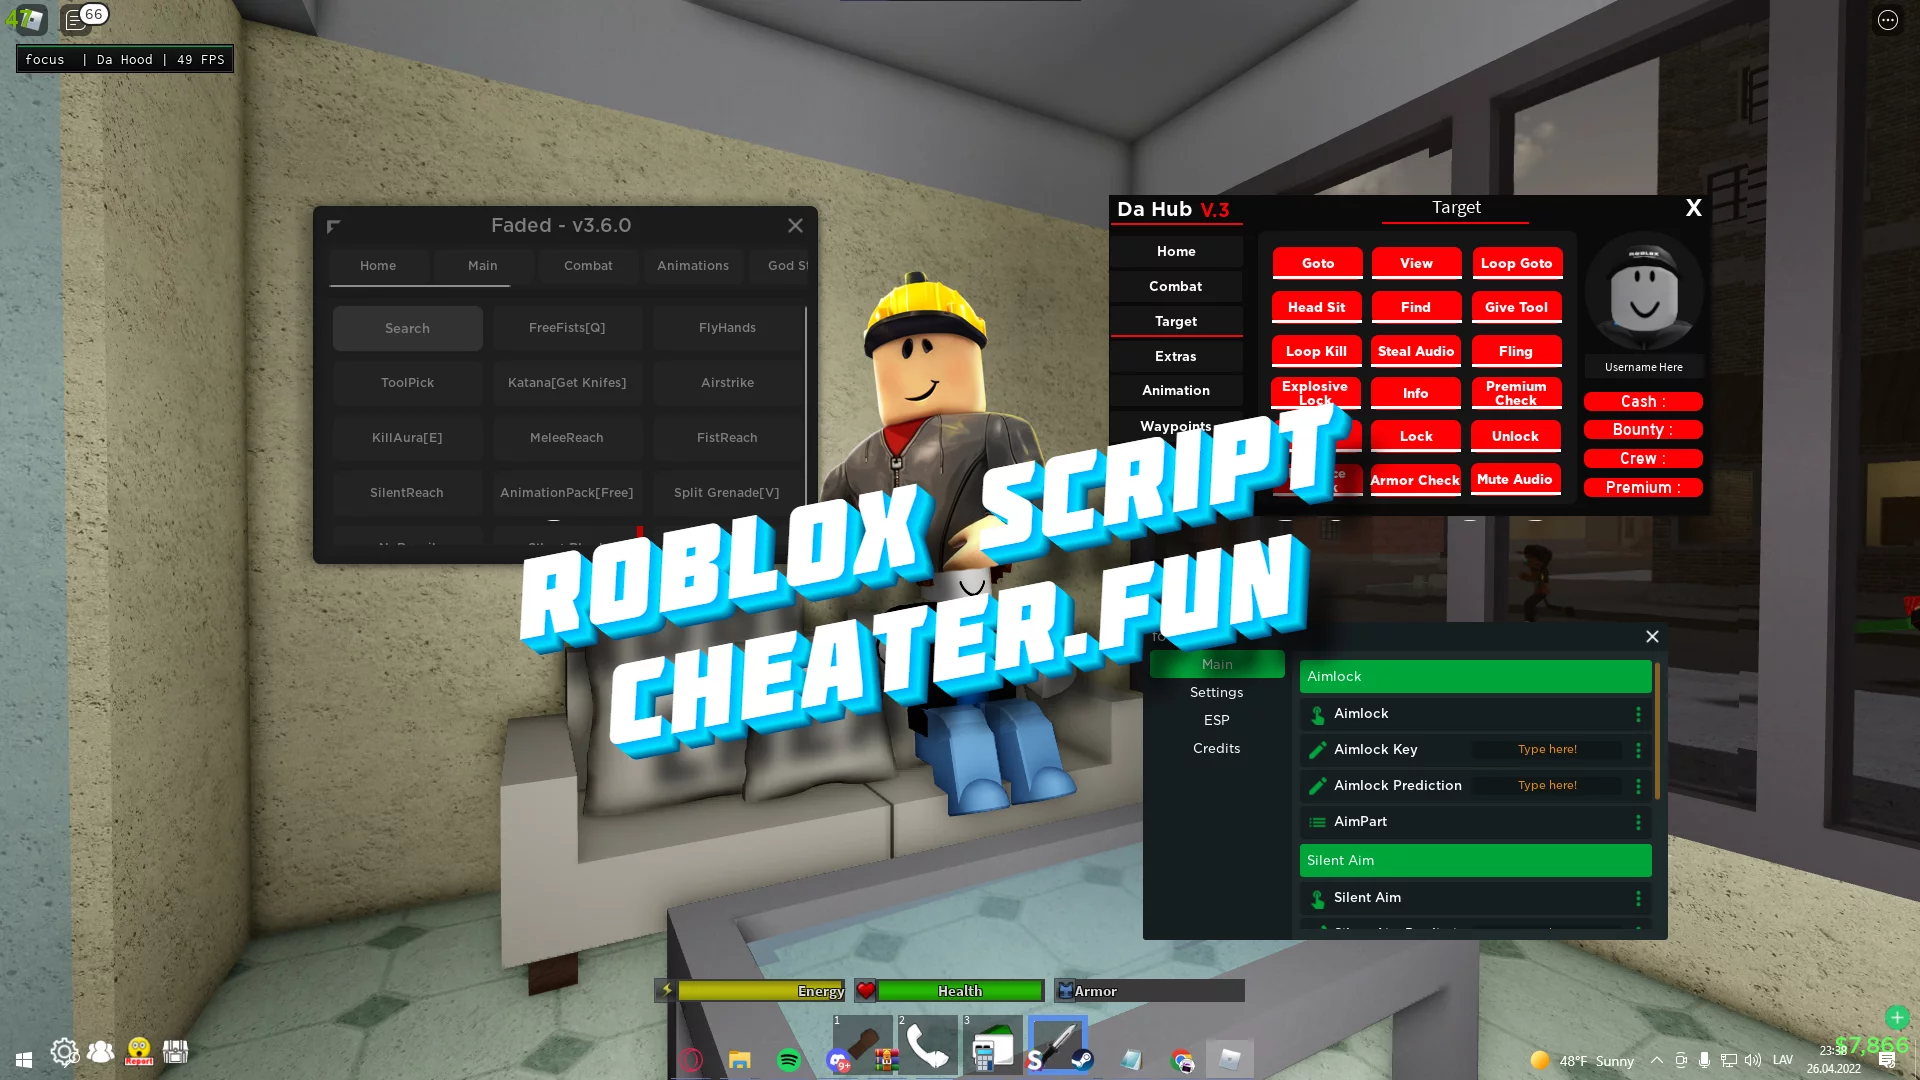 Da Hood Roblox - Scripts, Hacks and Cheats + Codes 2022